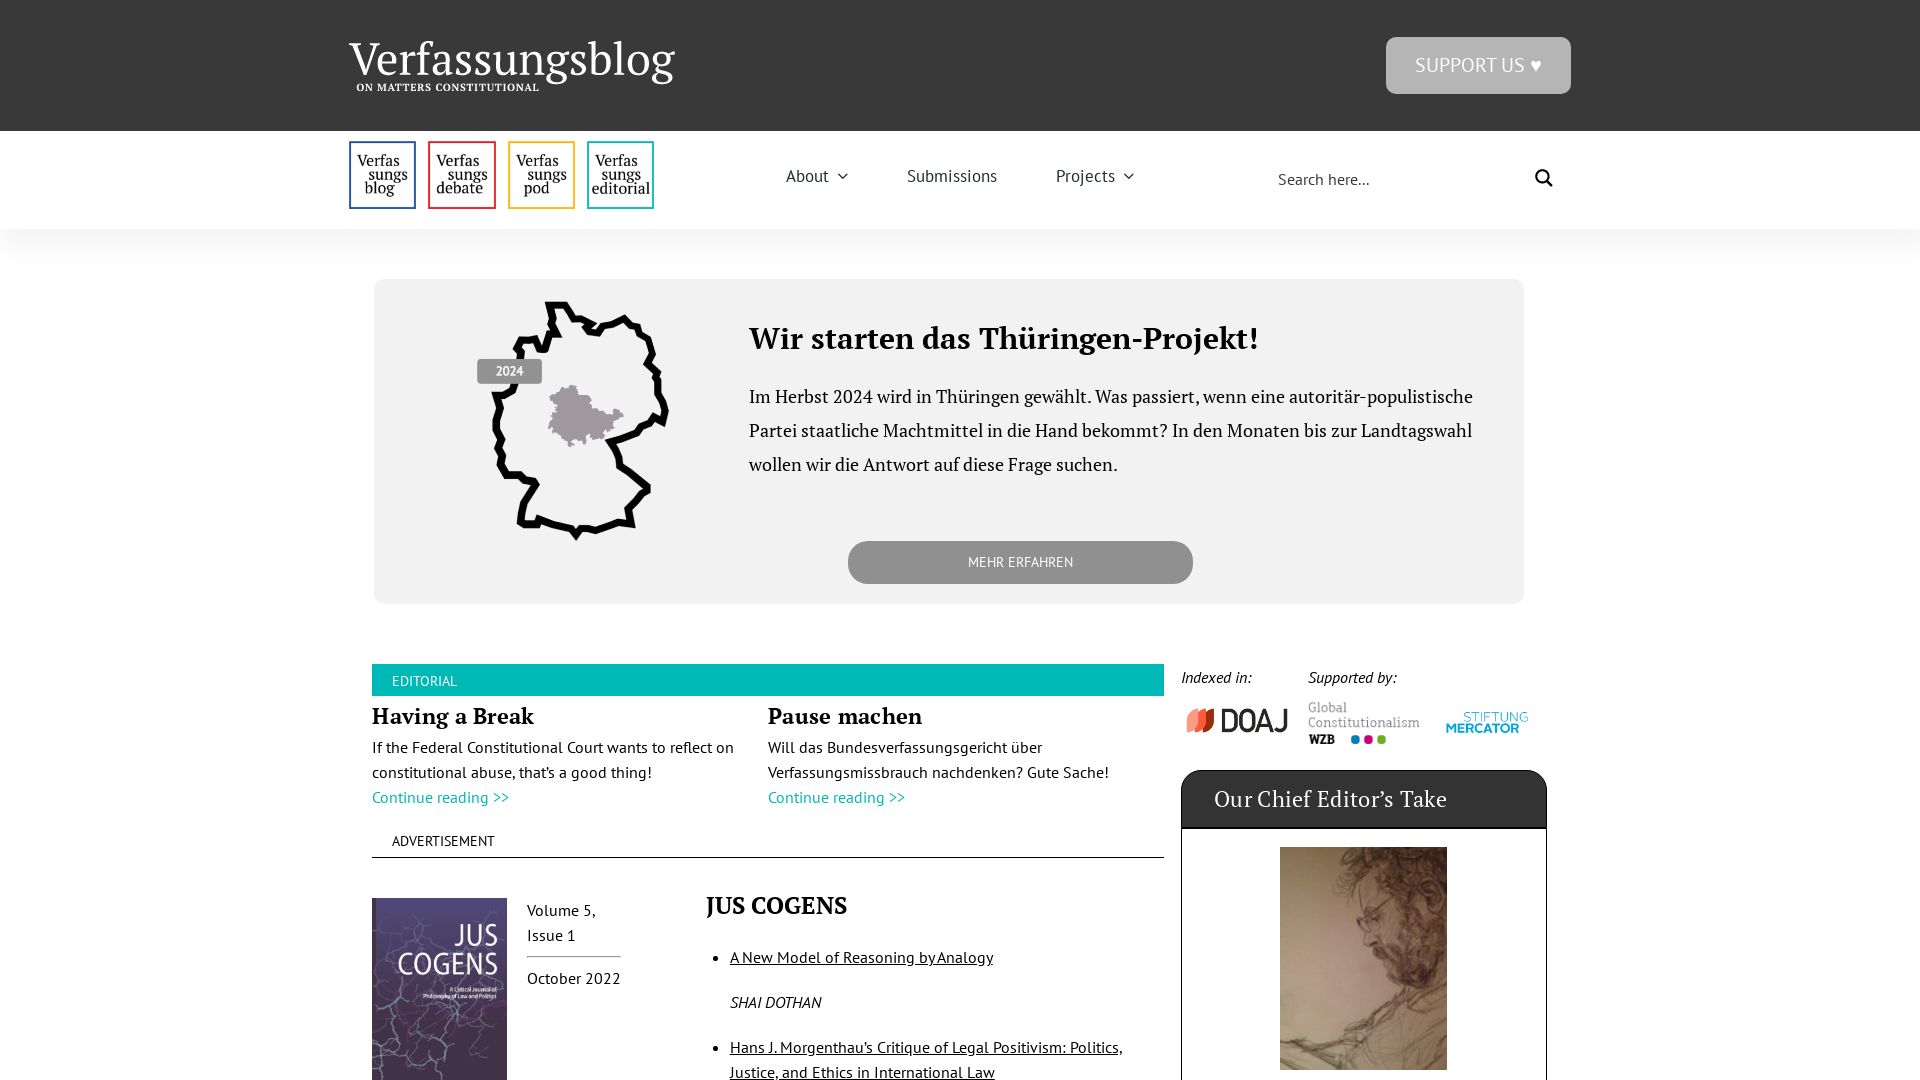 Stato del sito web verfassungsblog.de è   ONLINE